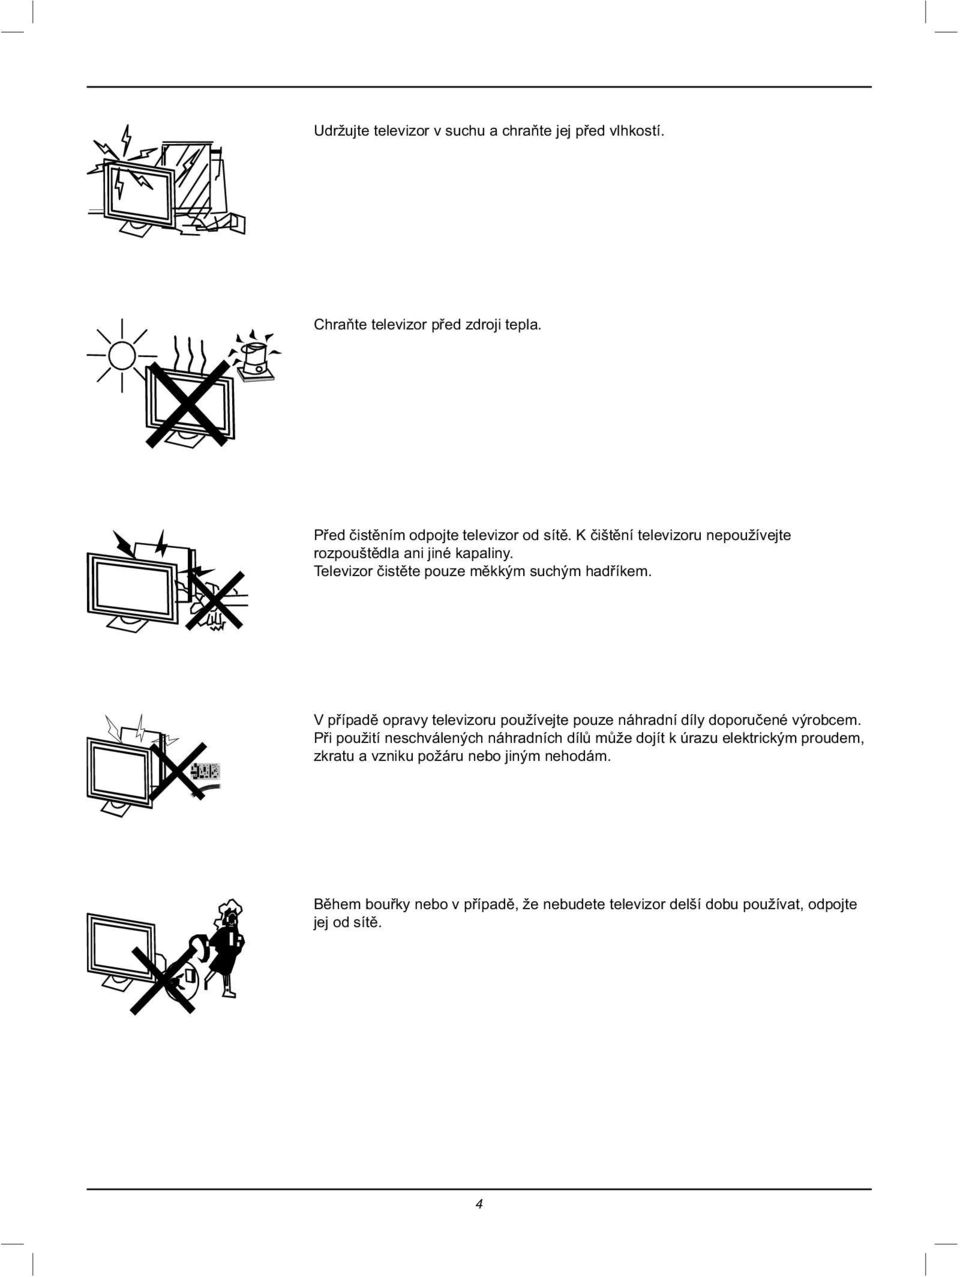 V případě opravy televizoru používejte pouze náhradní díly doporučené výrobcem.